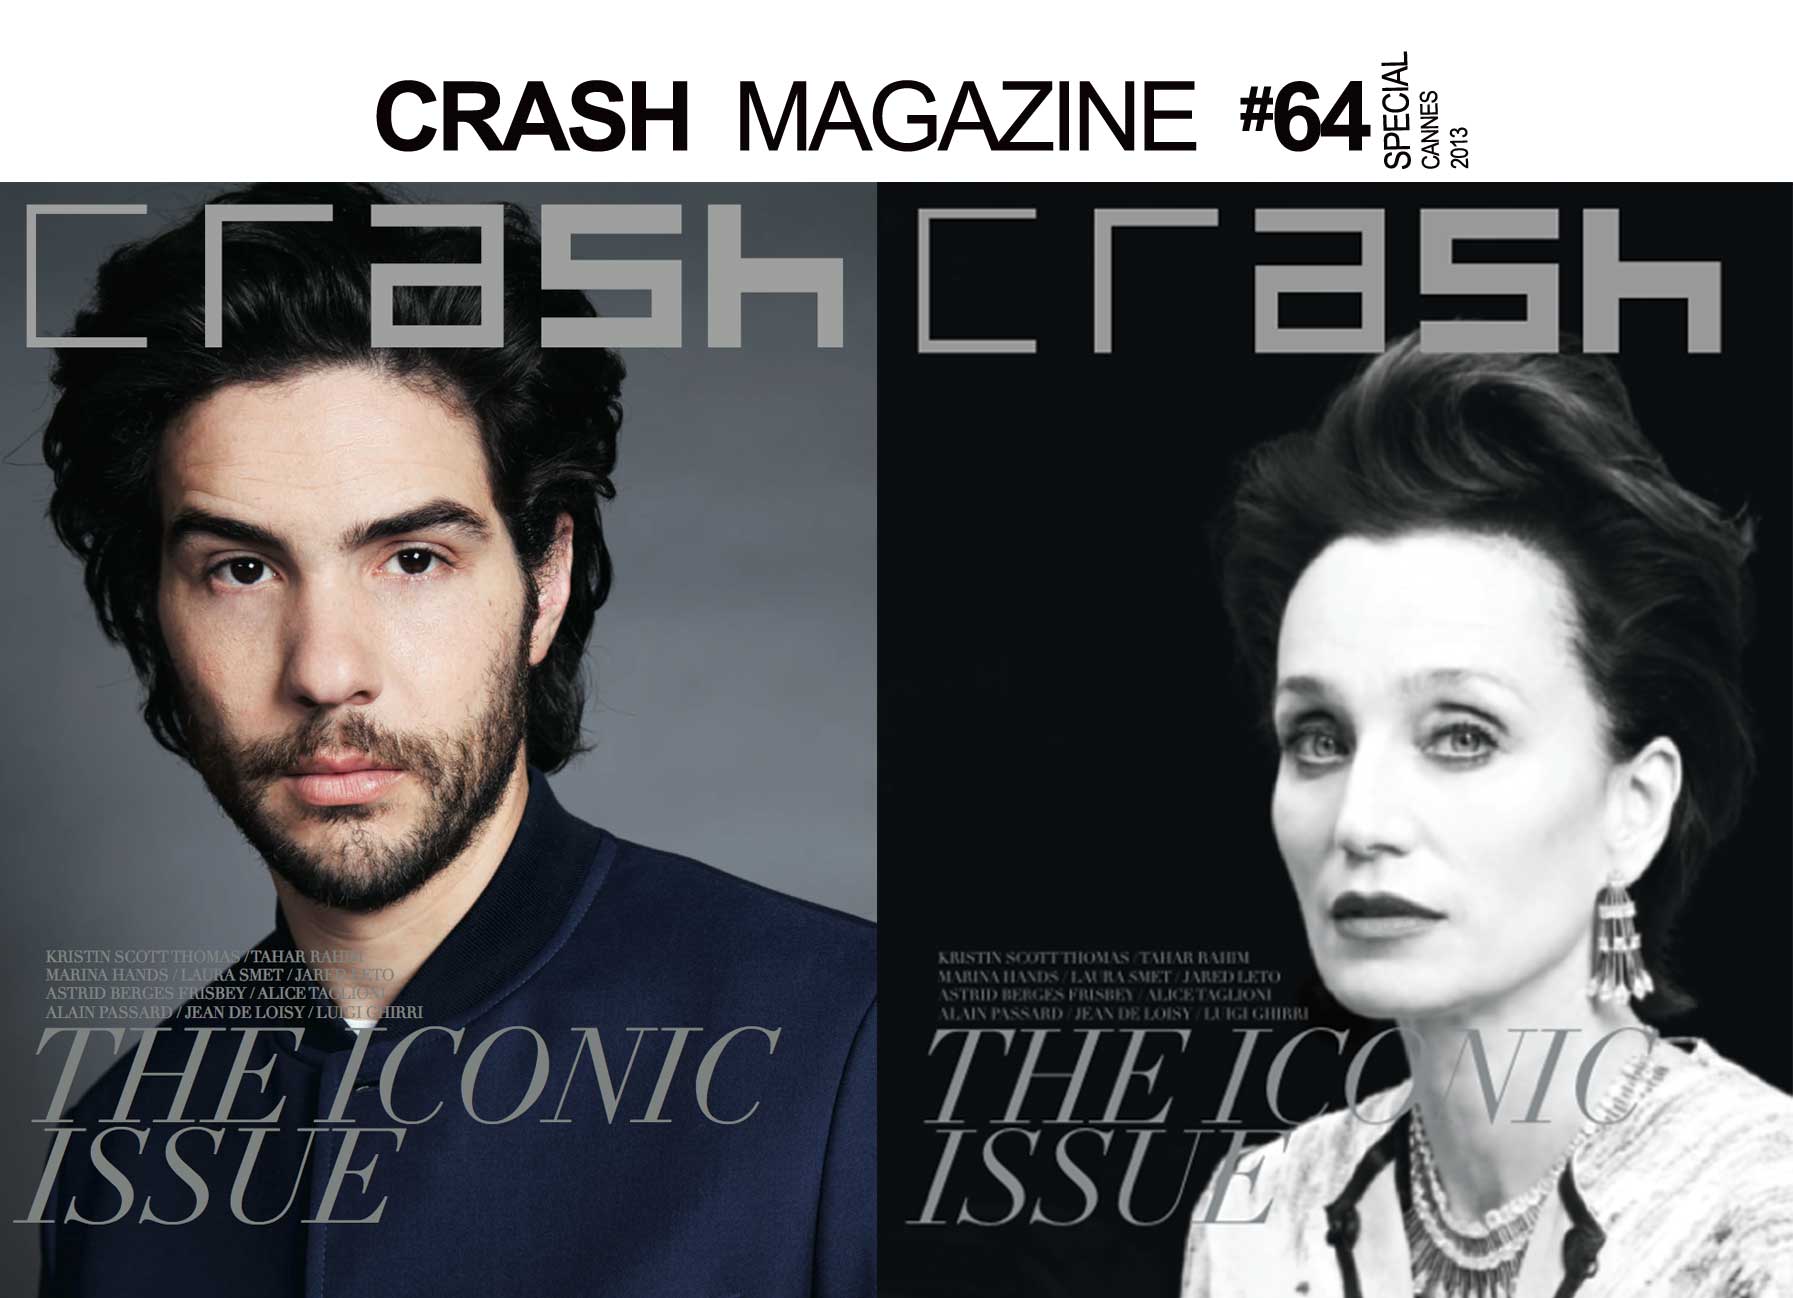 CRASH MAGAZINE #64 / THE ICONIC ISSUE